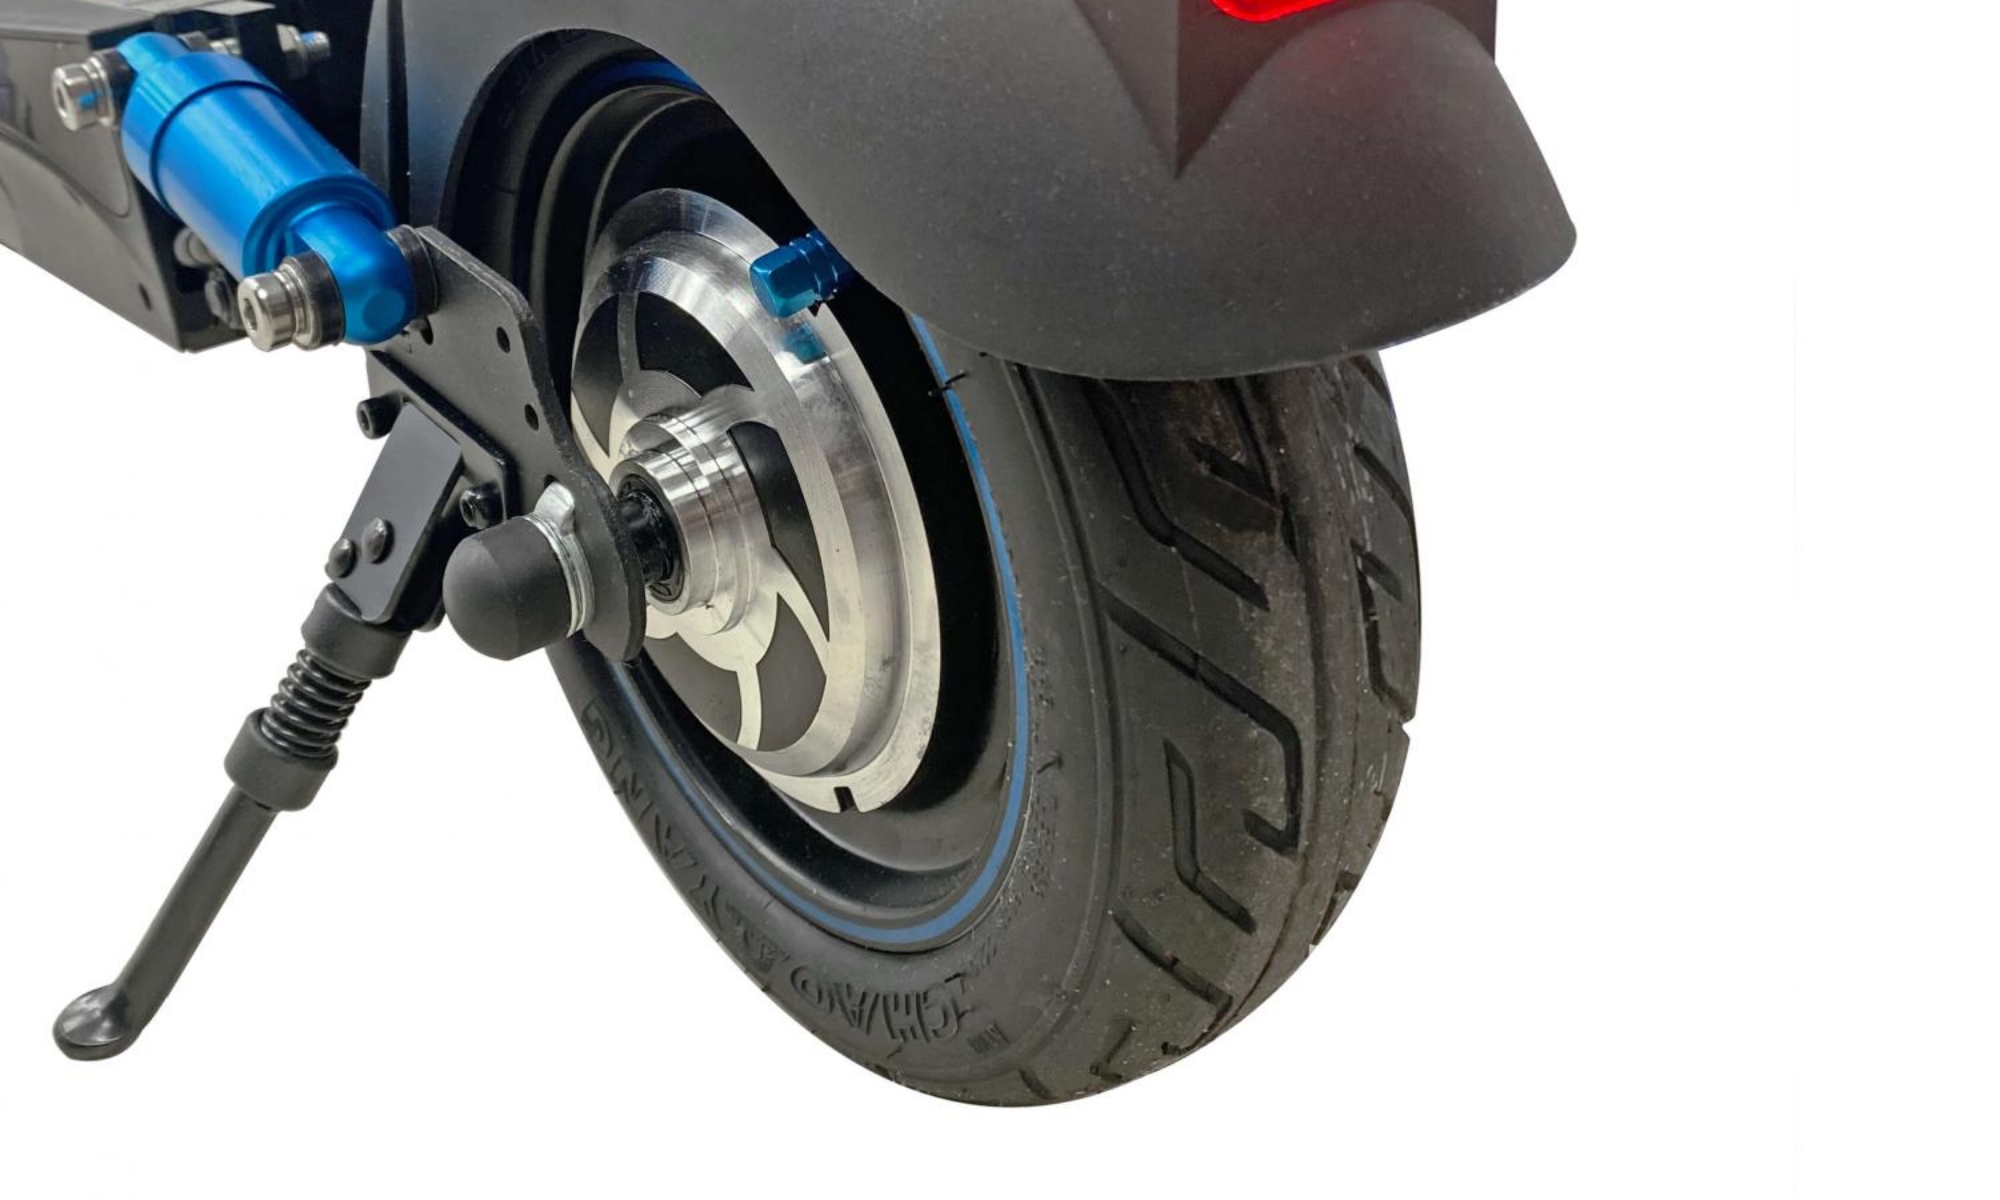 Las ruedas del SmartGyro Speedway C son macizas, lo que ayuda a la estabilidad total de la conducción con él.